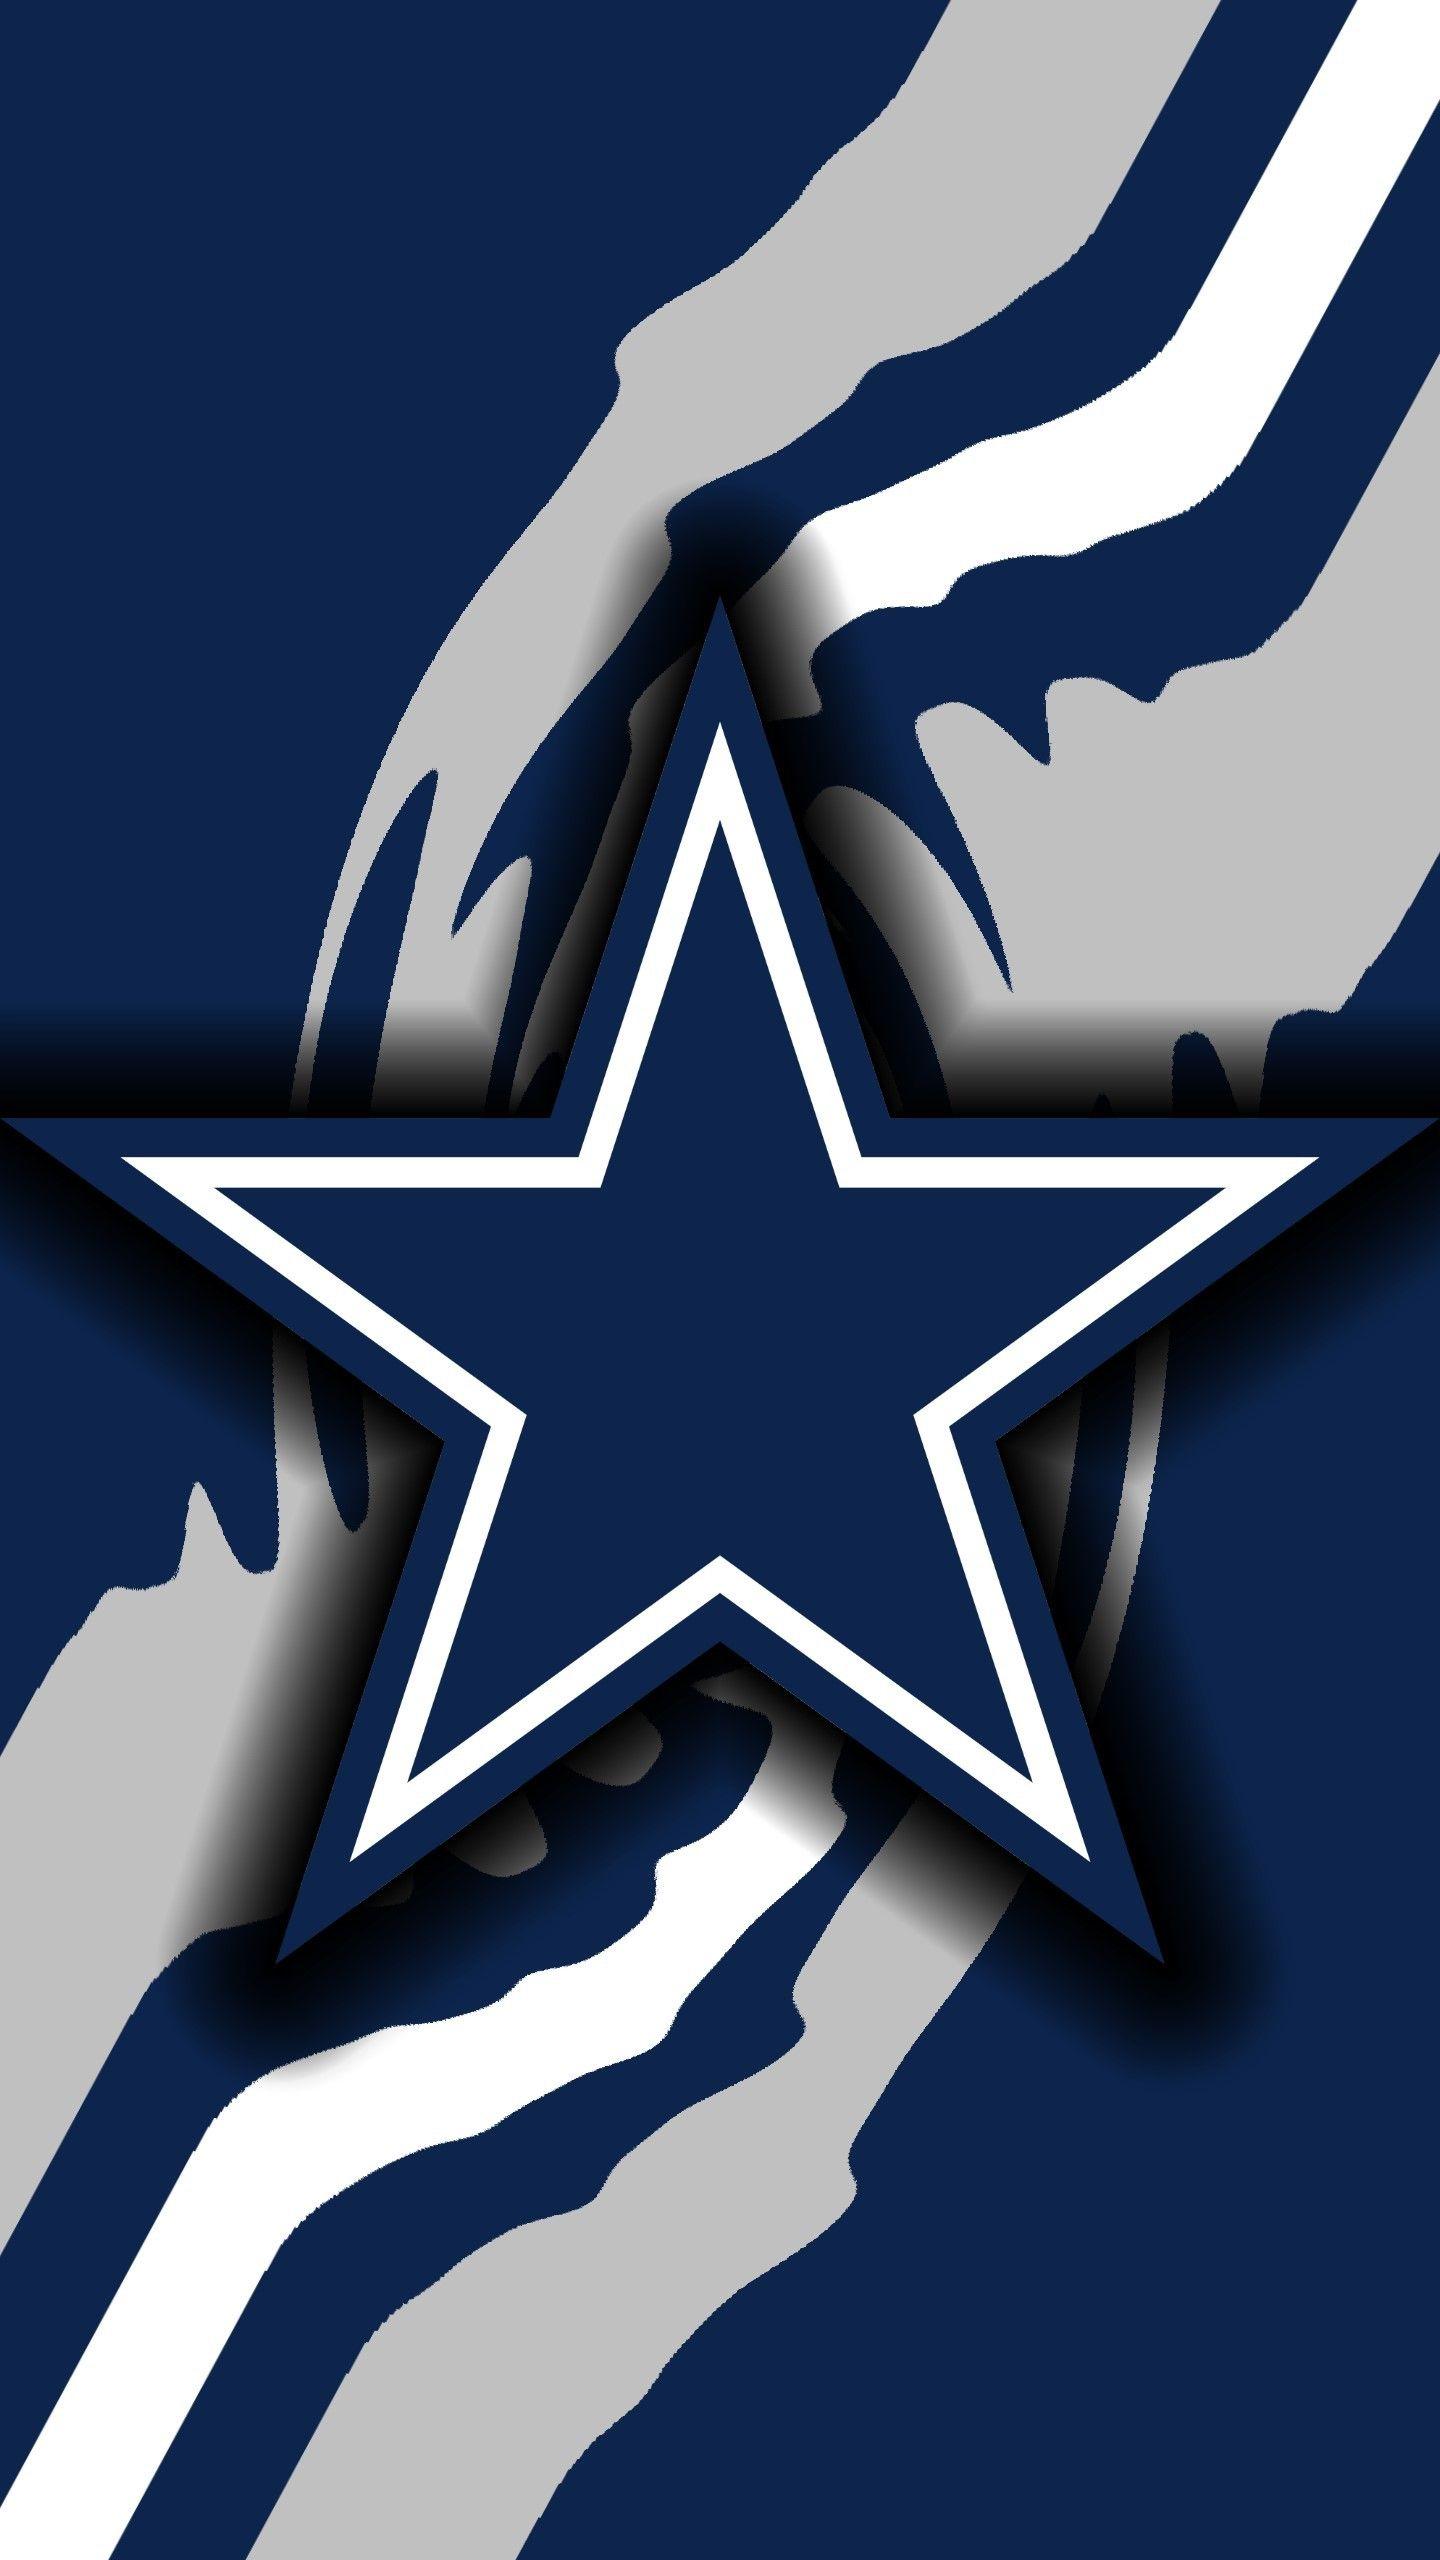 49 Dallas Cowboys Wallpaper and Screensavers  WallpaperSafari